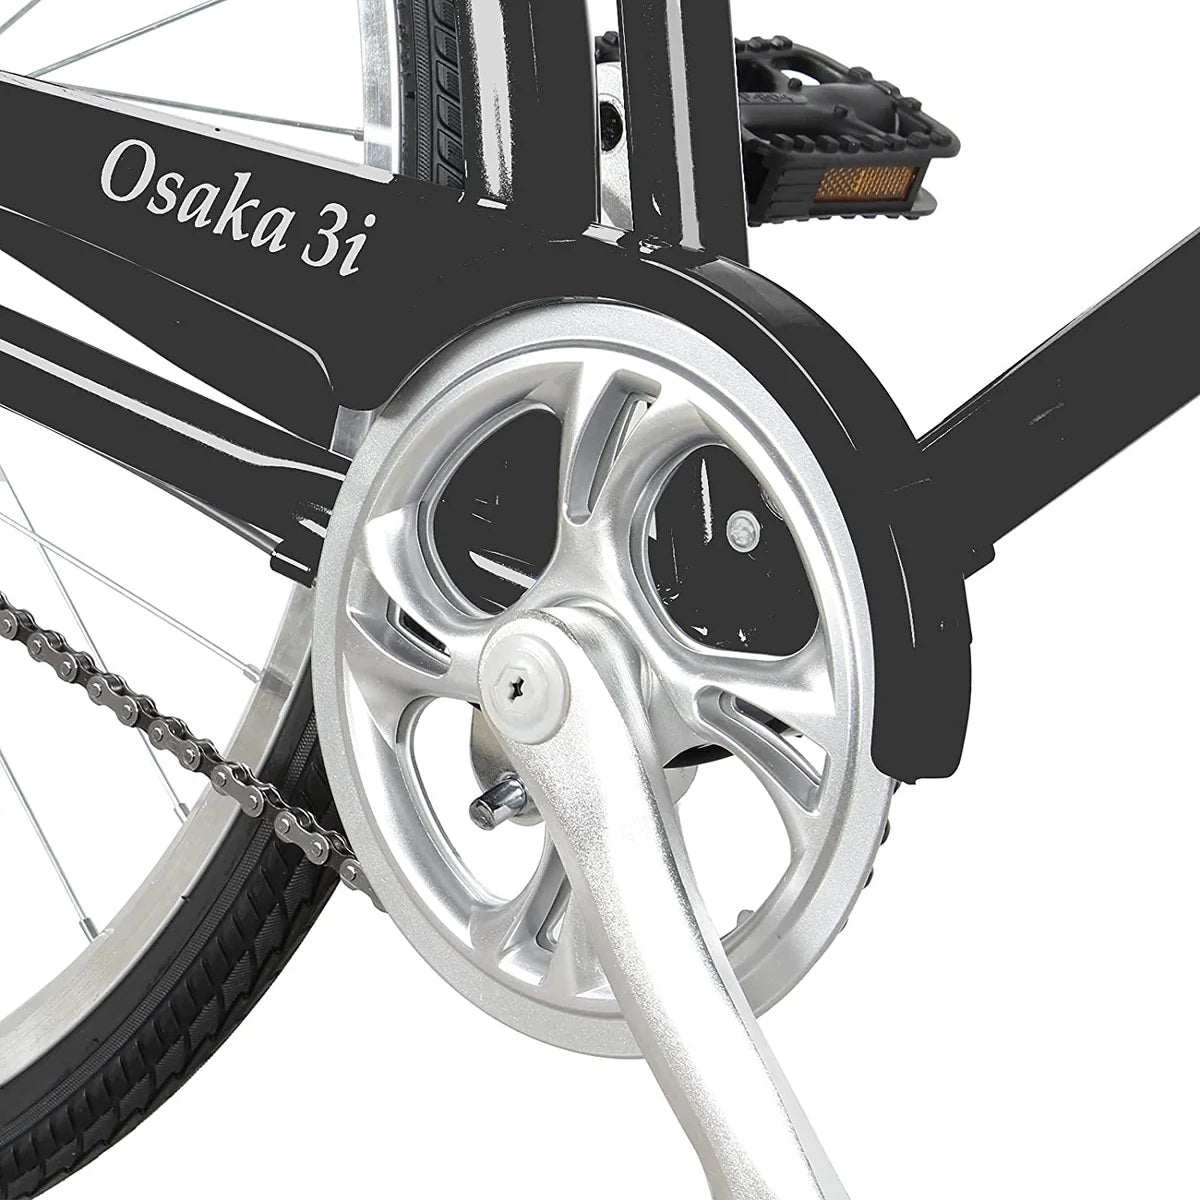 Tracer OSAKA Men's 700c Shimano 3 Speed Hybrid City Bike